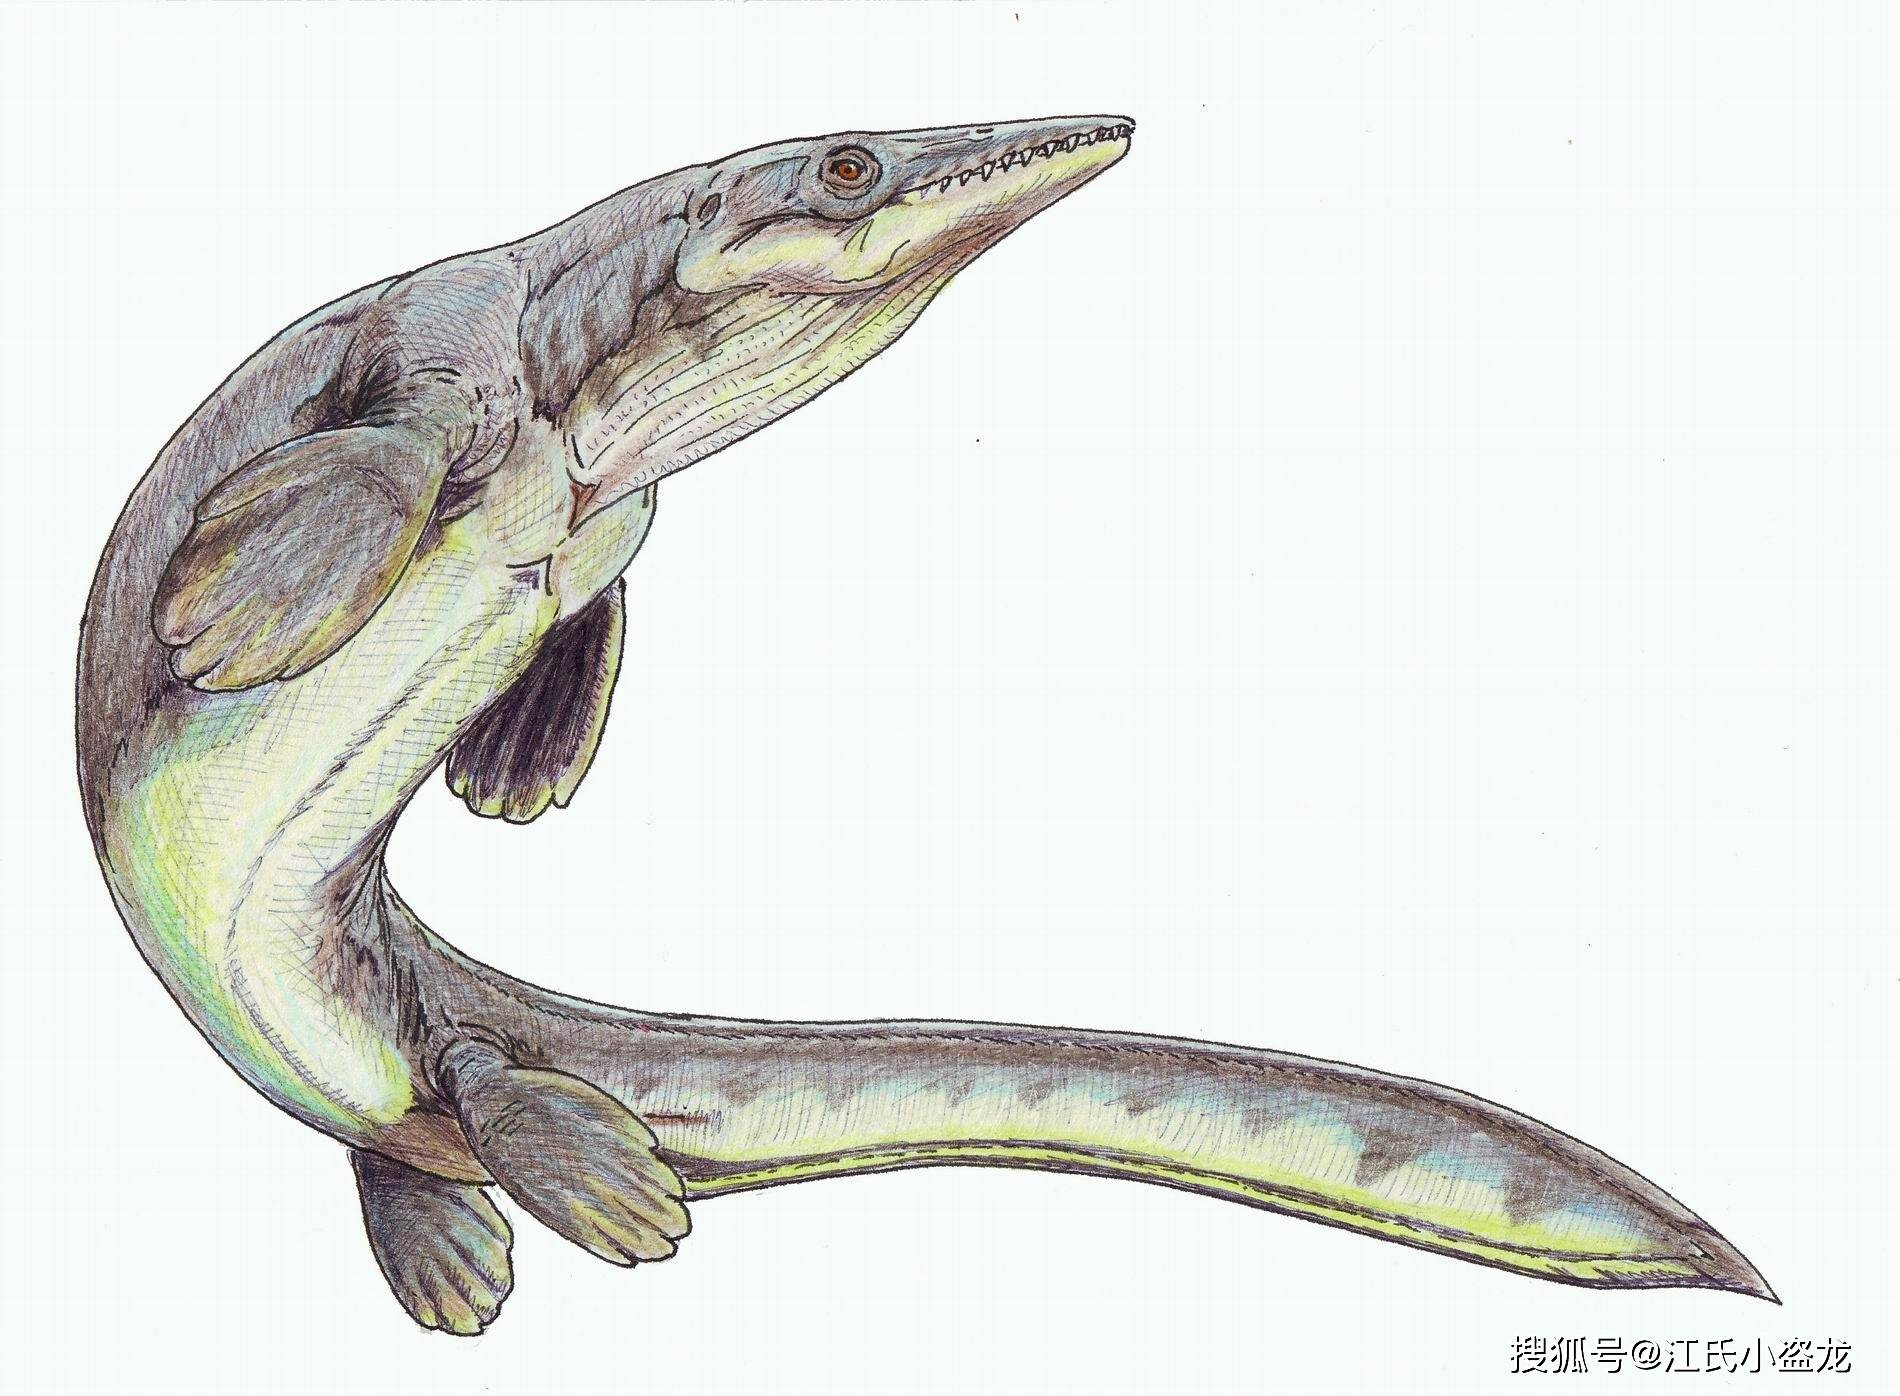 板踝龙根据不完整的化石判断,这只海王龙的体长达到